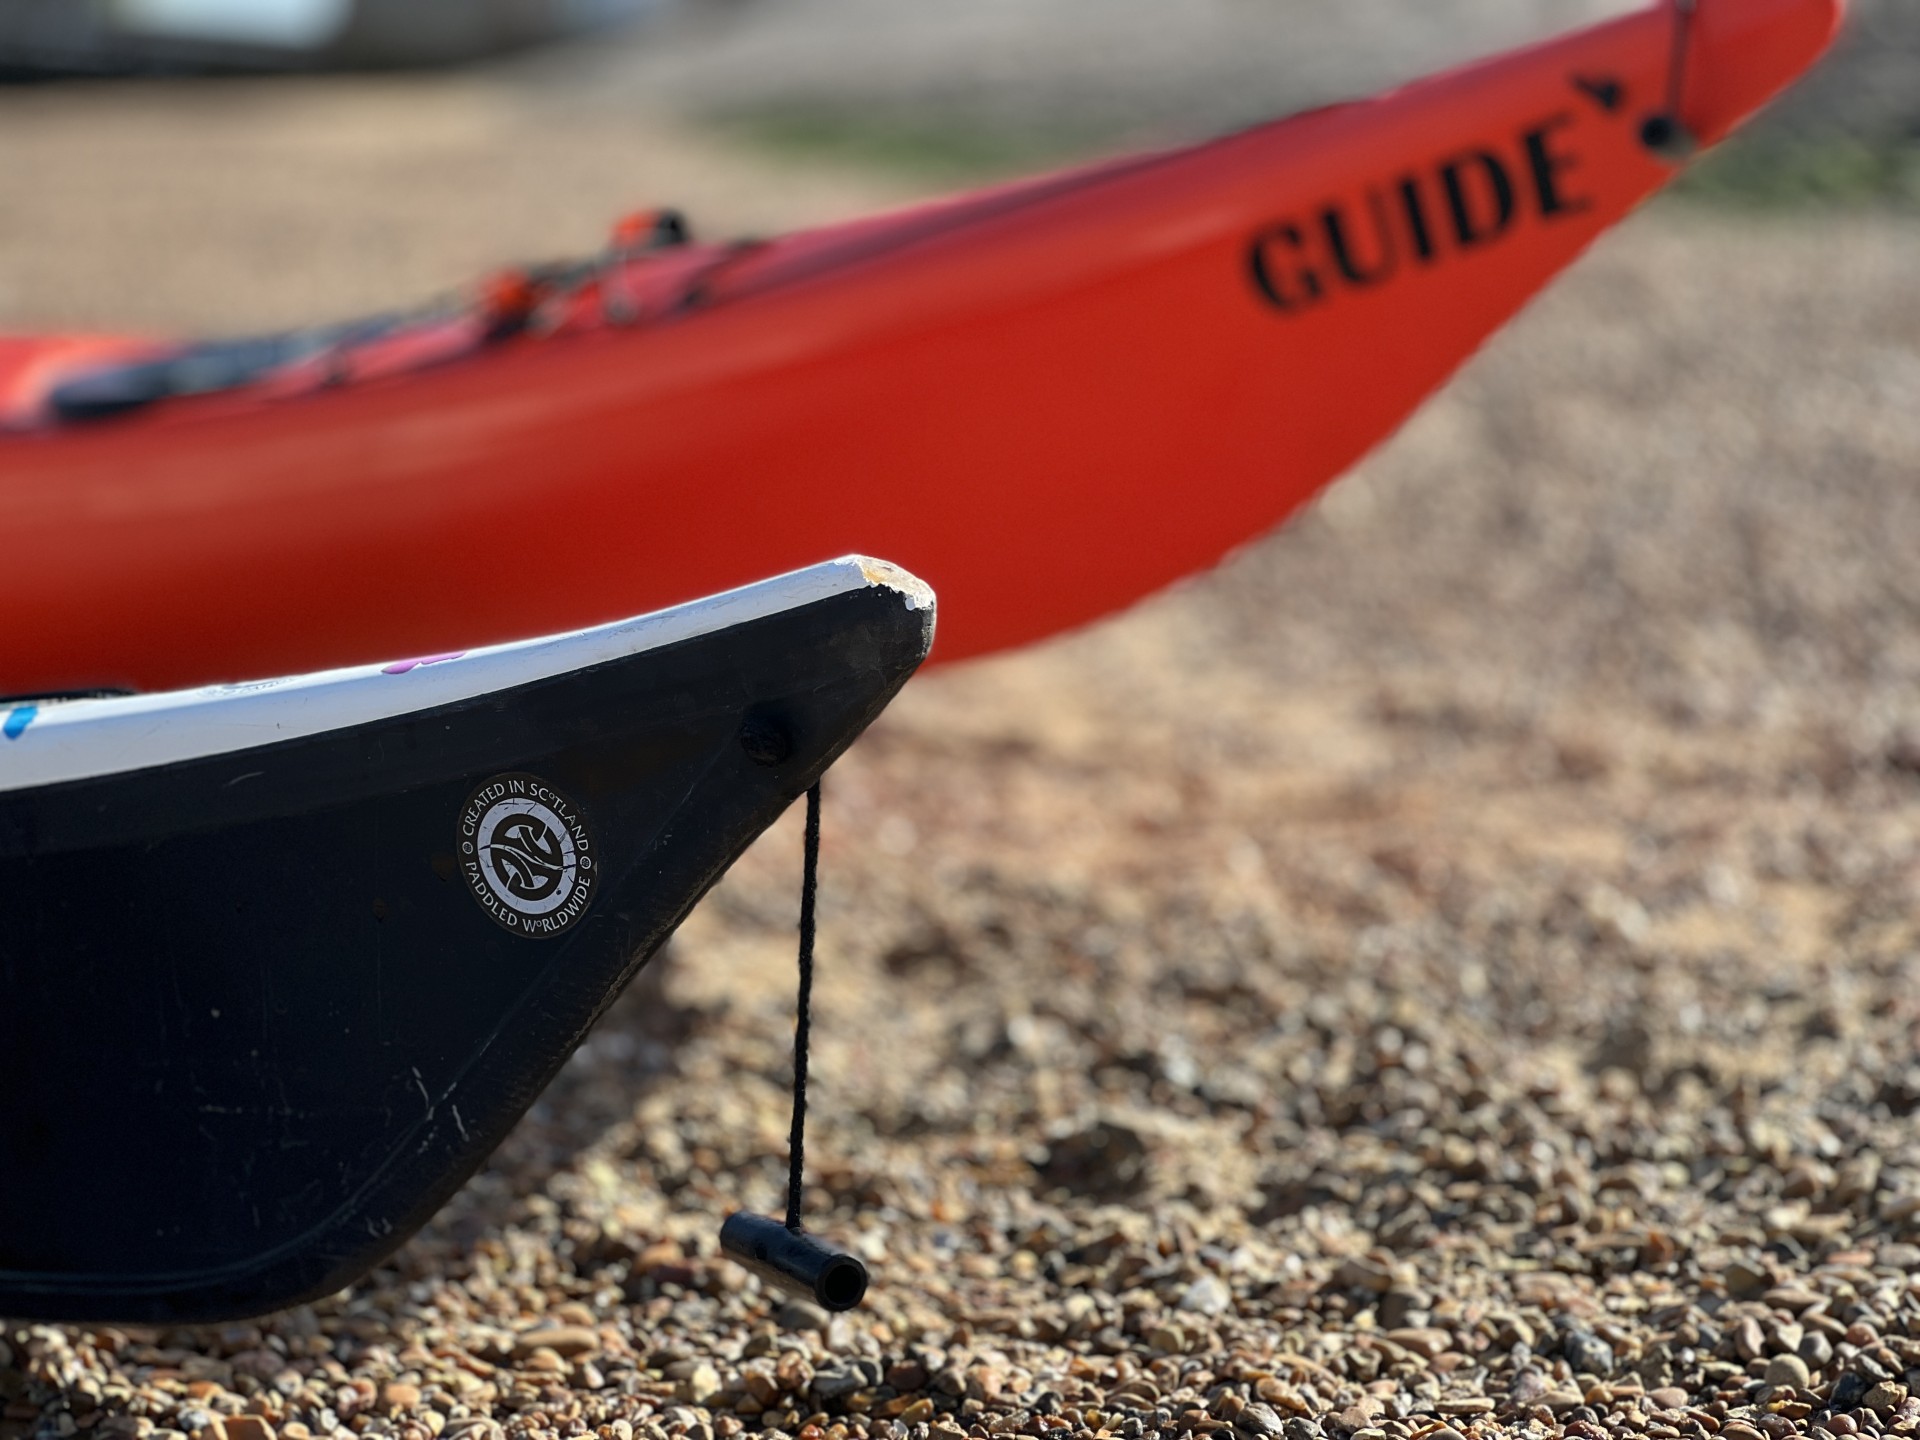 Guide sea kayak with NOMAD Sea Kayaking.